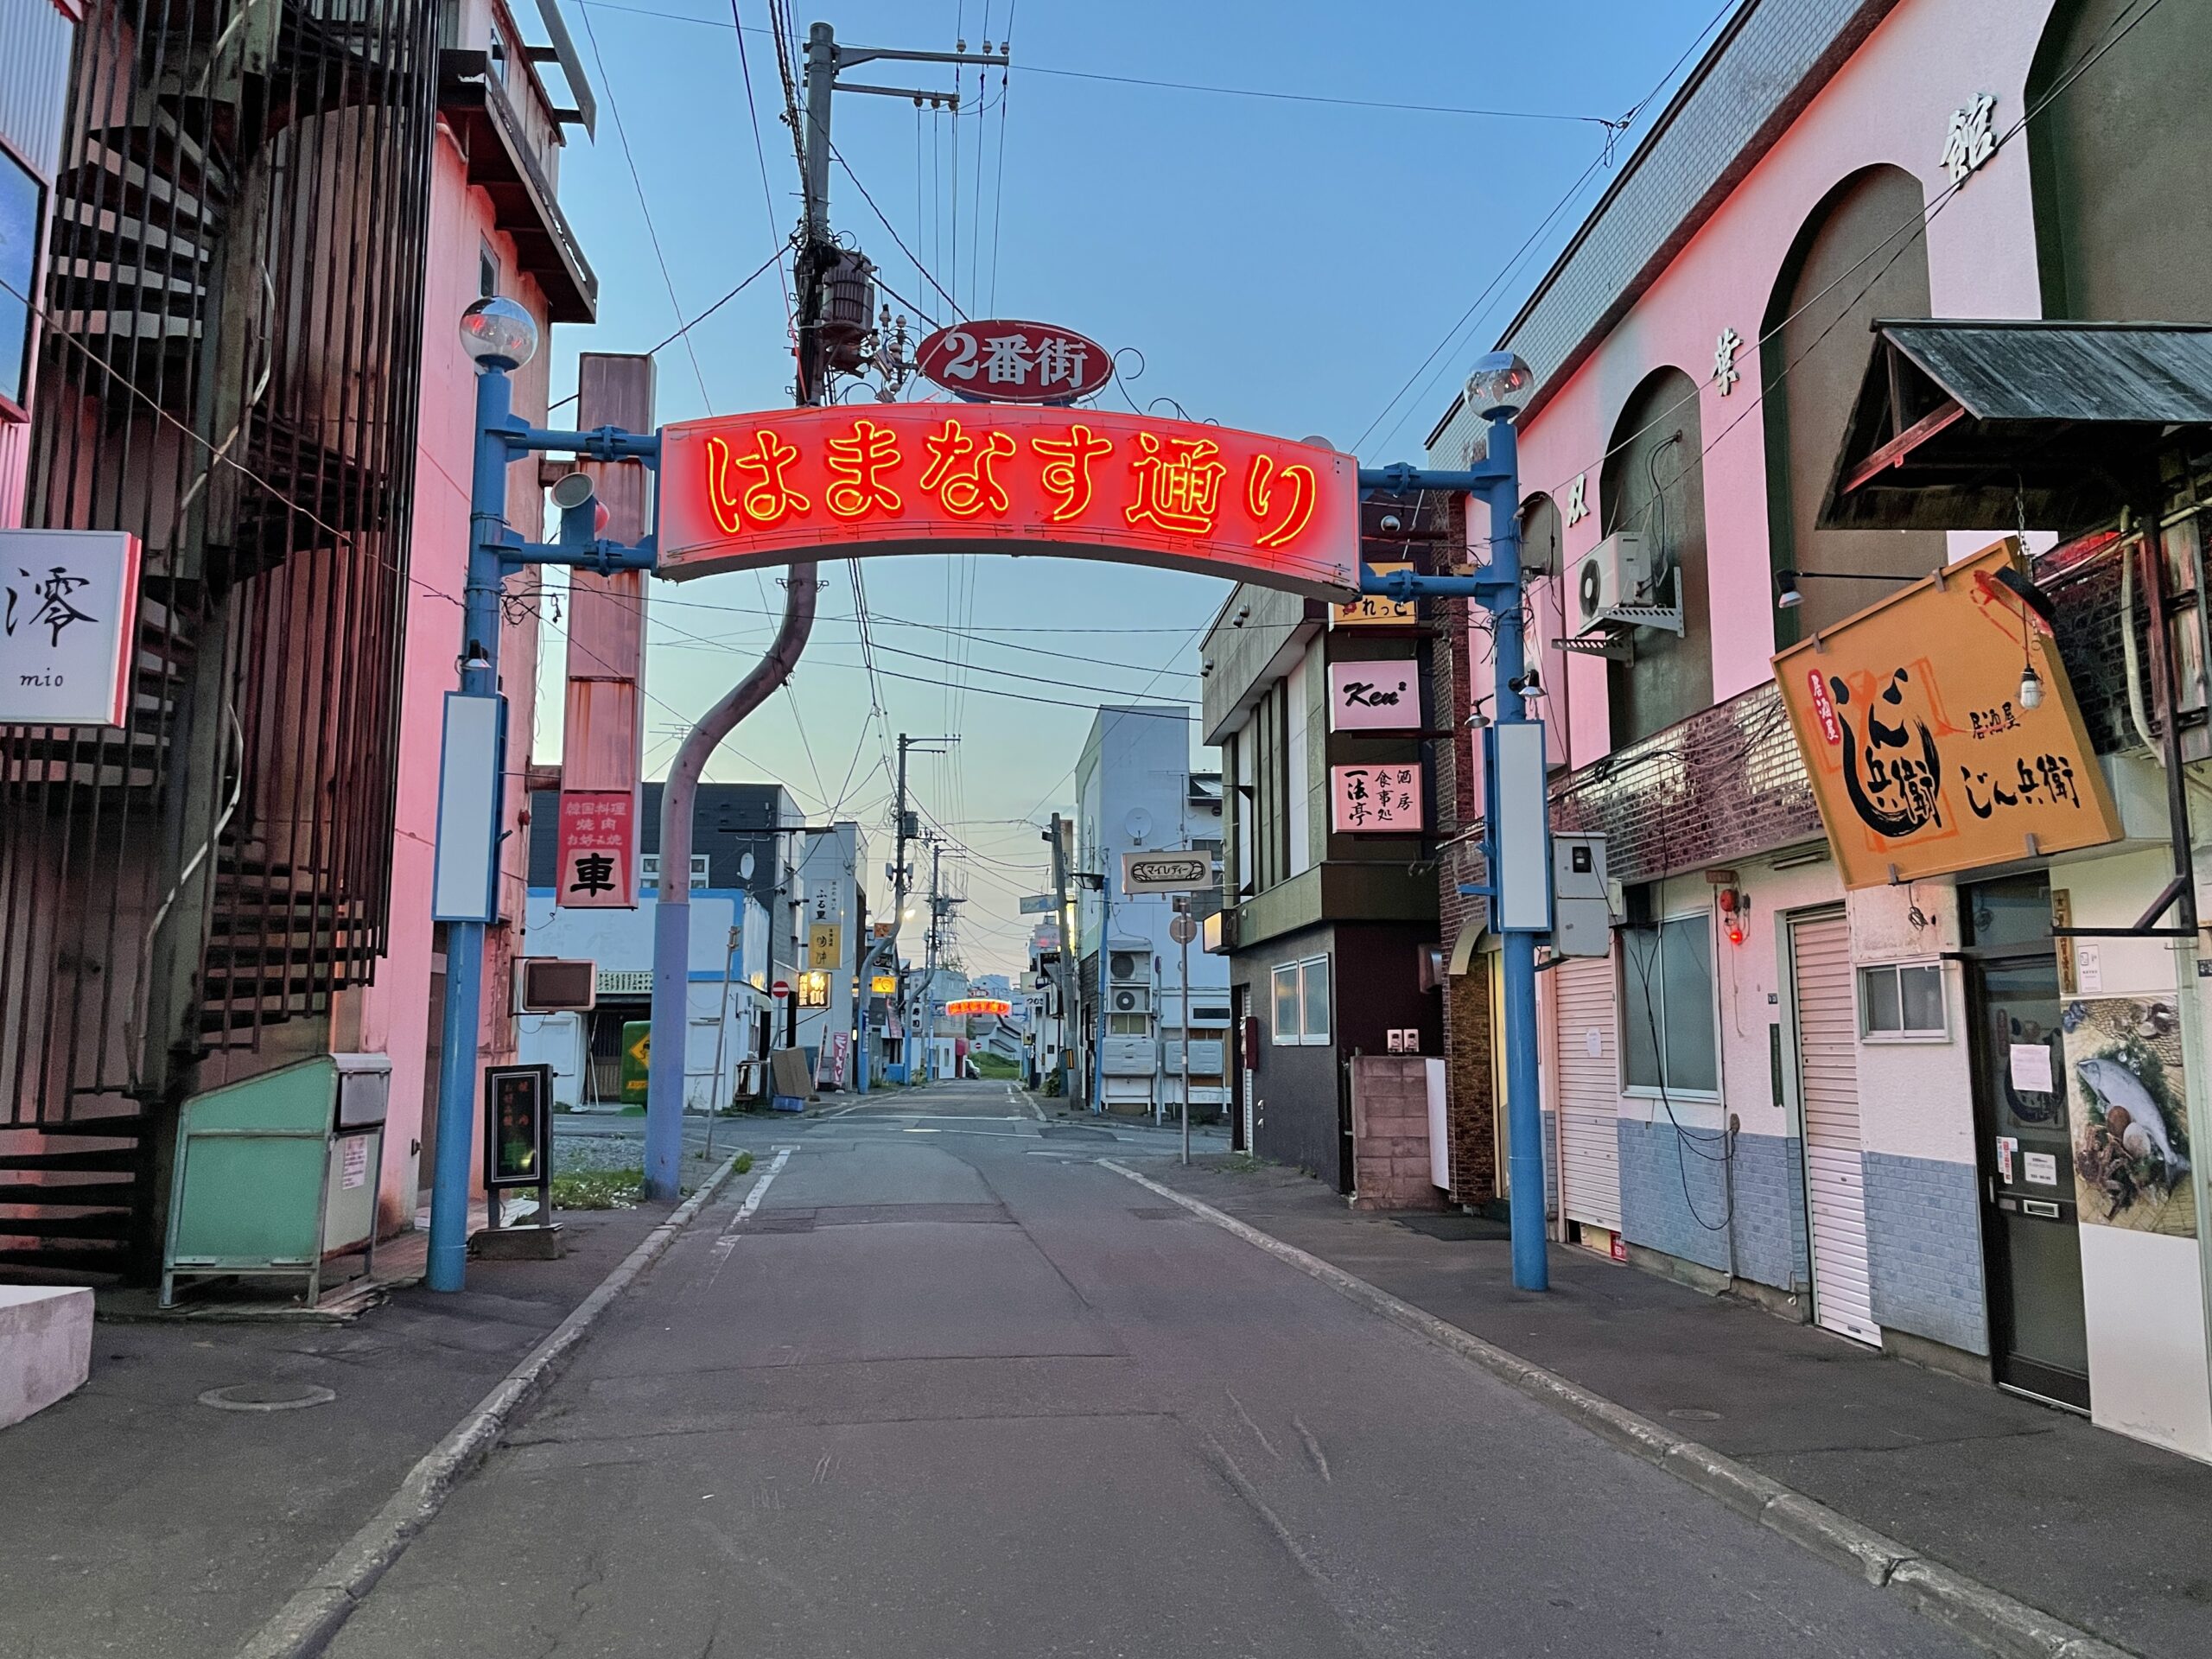 Hamanasu-dōri in Mombetsu: Hier ist definitiv die Zeit stehengeblieben